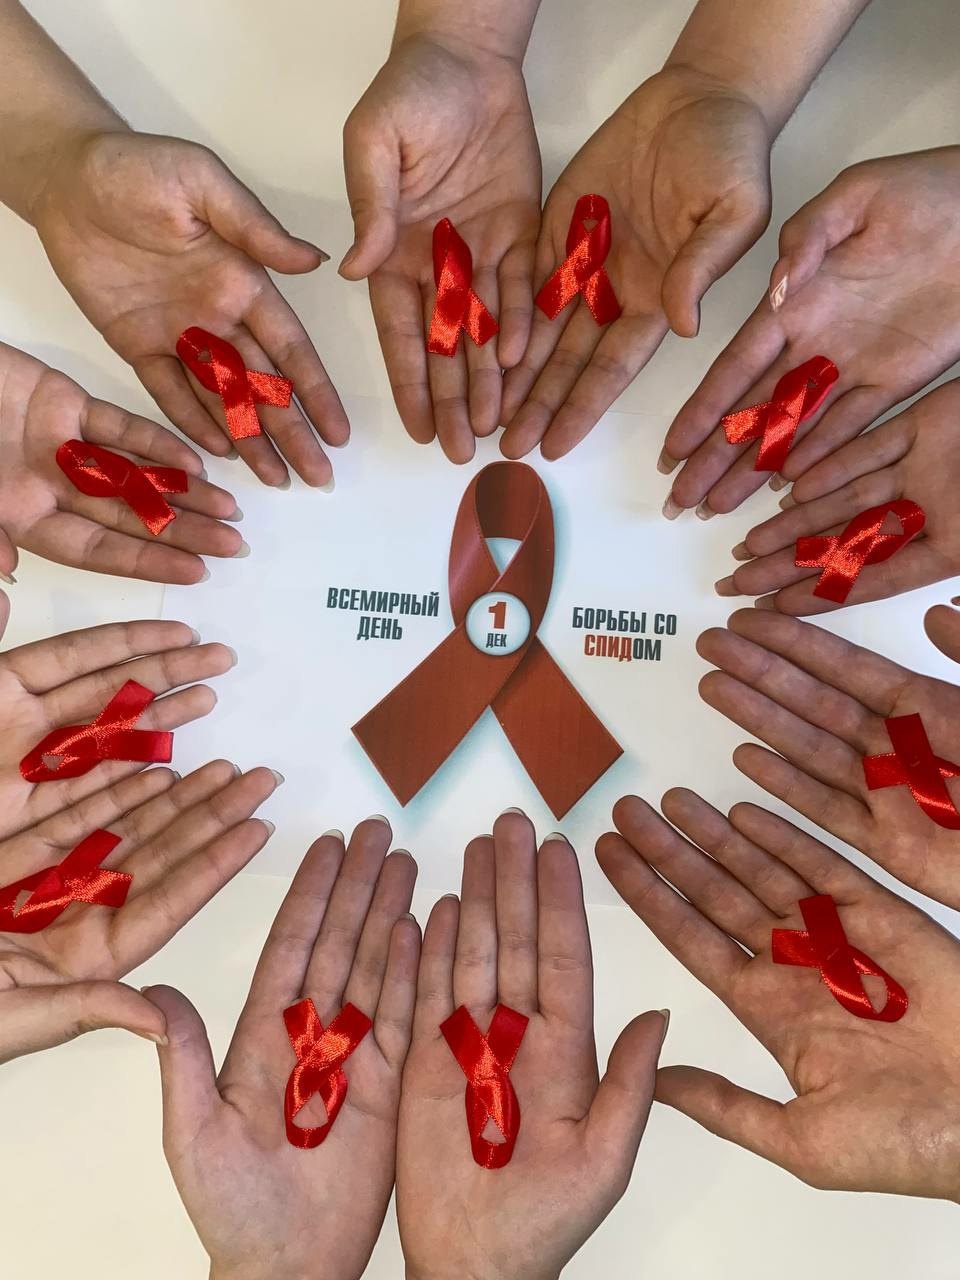 1 декабря - Всемирный день борьбы со СПИДом.